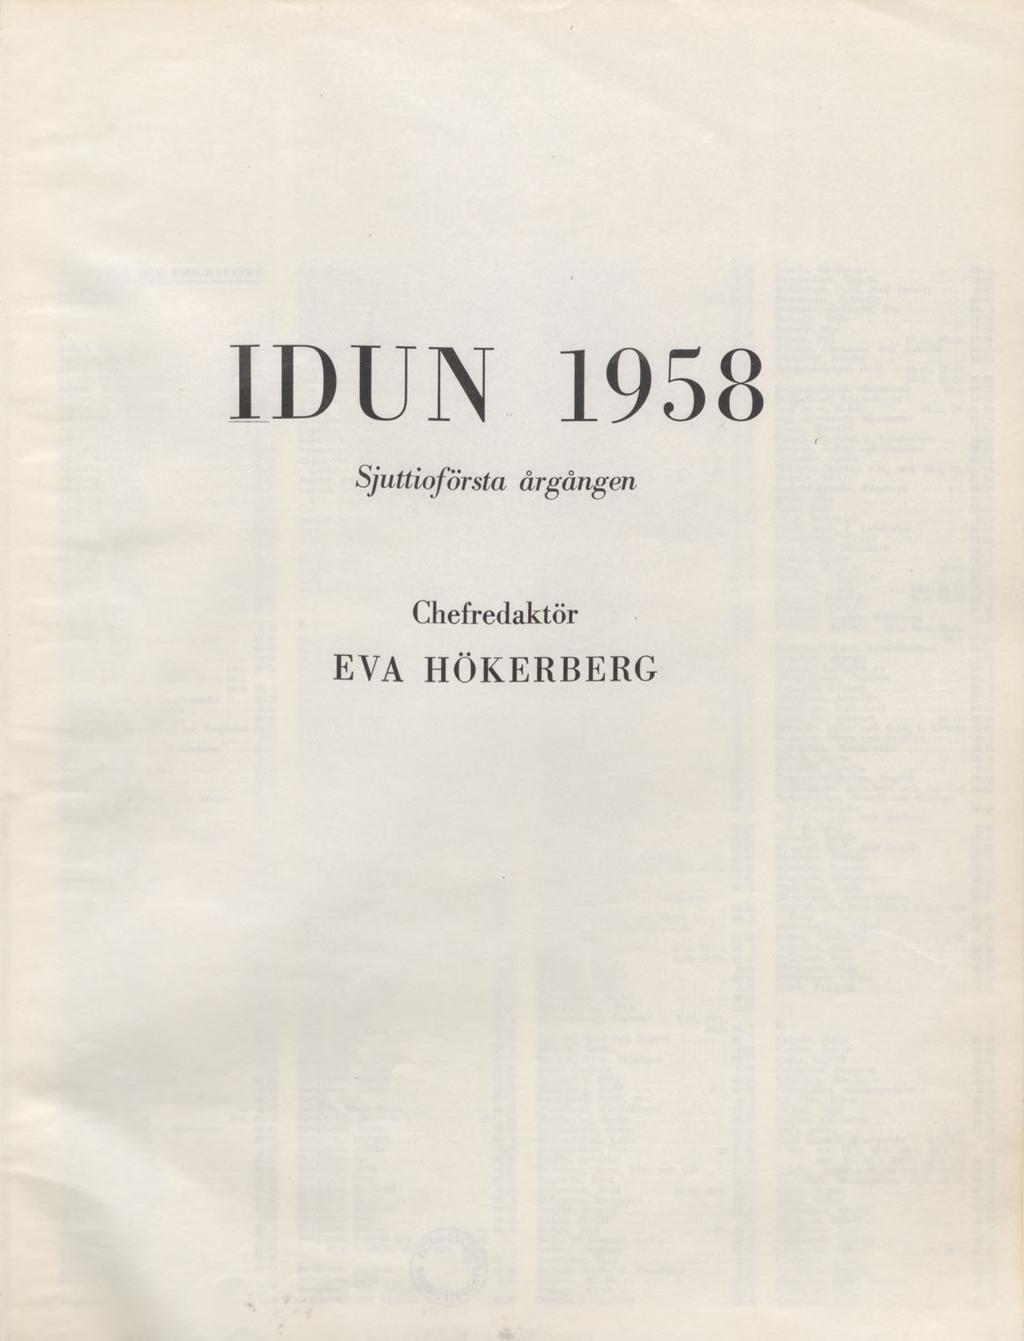 IDUN 1958 Sjuttioförsta årgången - PDF Gratis nedladdning